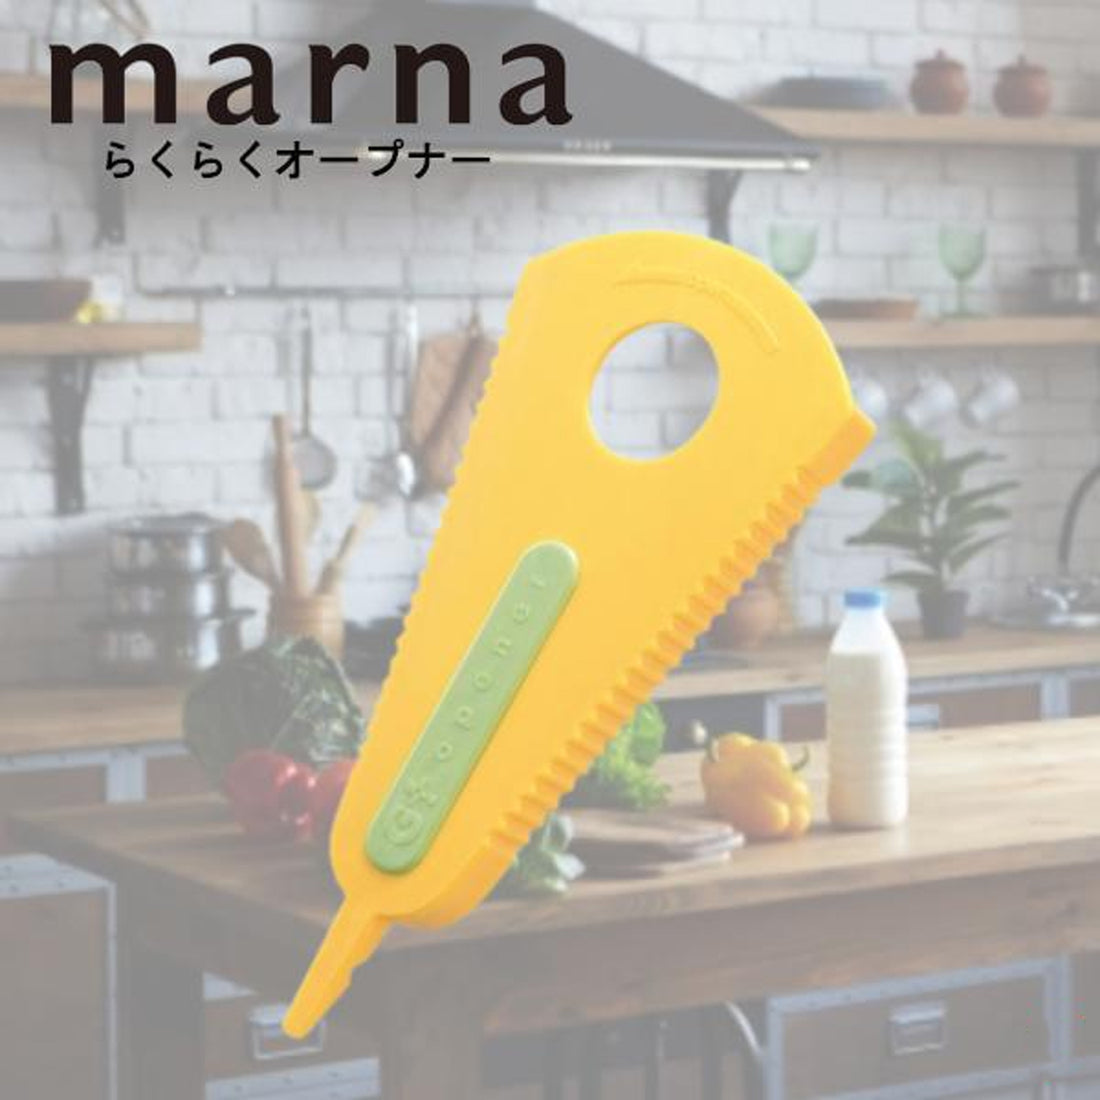 MARNA 多功能开瓶器 - 黄色 - 1 件